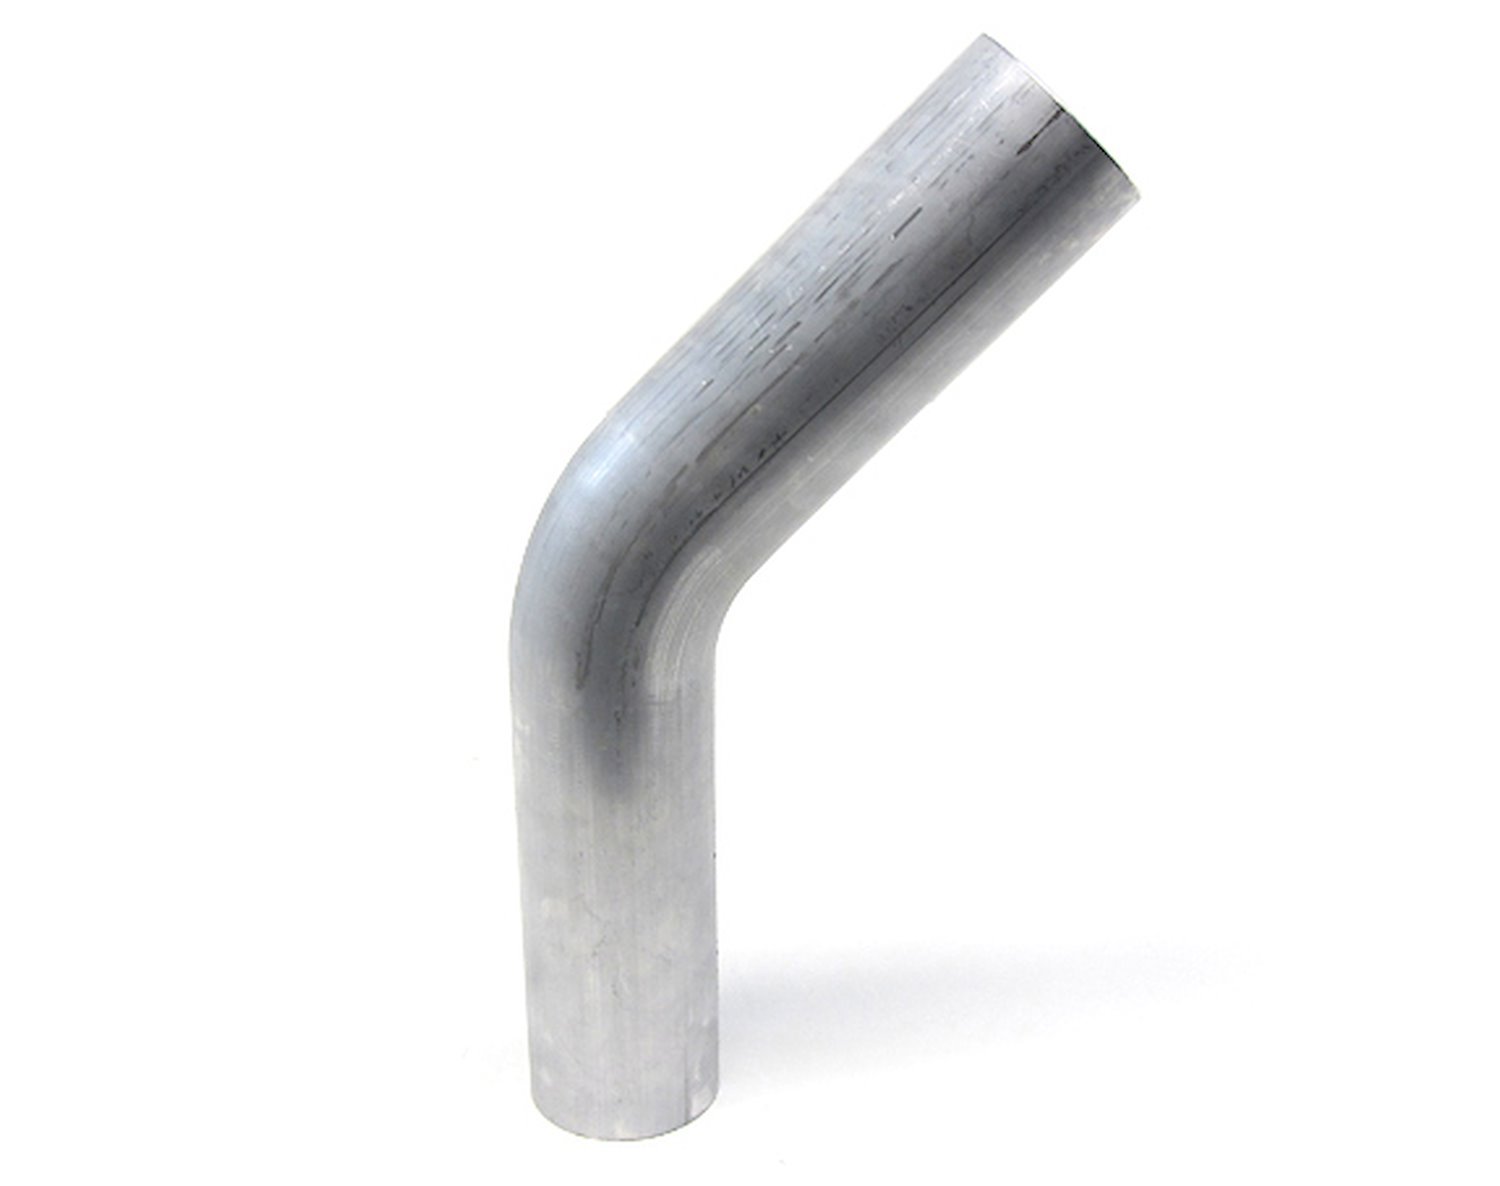 AT45-250-CLR-4 Aluminum Elbow Tube, 6061 Aluminum, 45-Degree Bend Elbow Tubing, 2-1/2 in. OD, Large Radius, 4 in. CLR